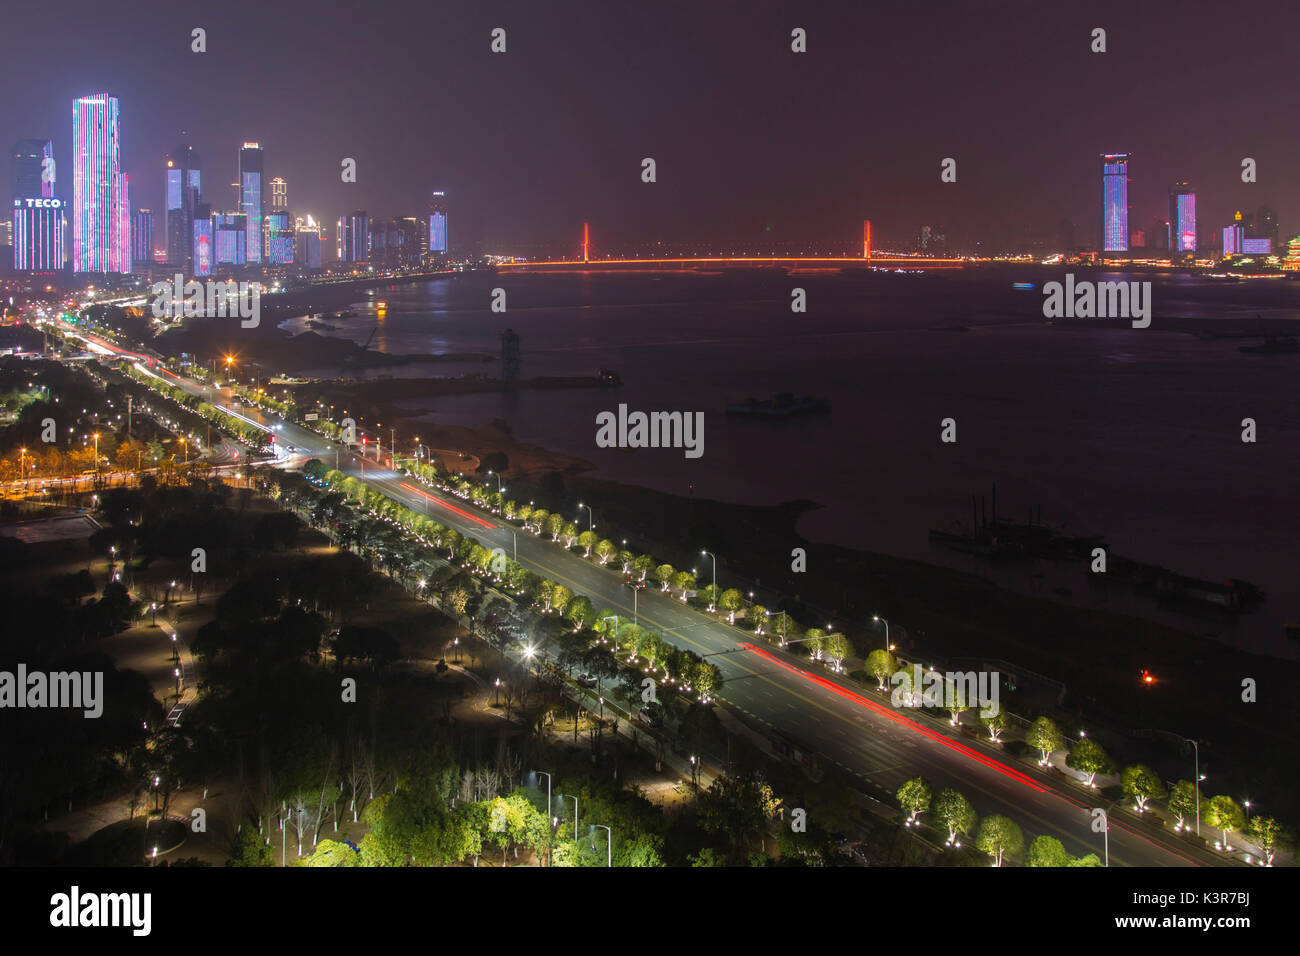 Vue panoramique de la ville de Nanchang, capitale de la province de Jianxi en Chine, la nuit Banque D'Images